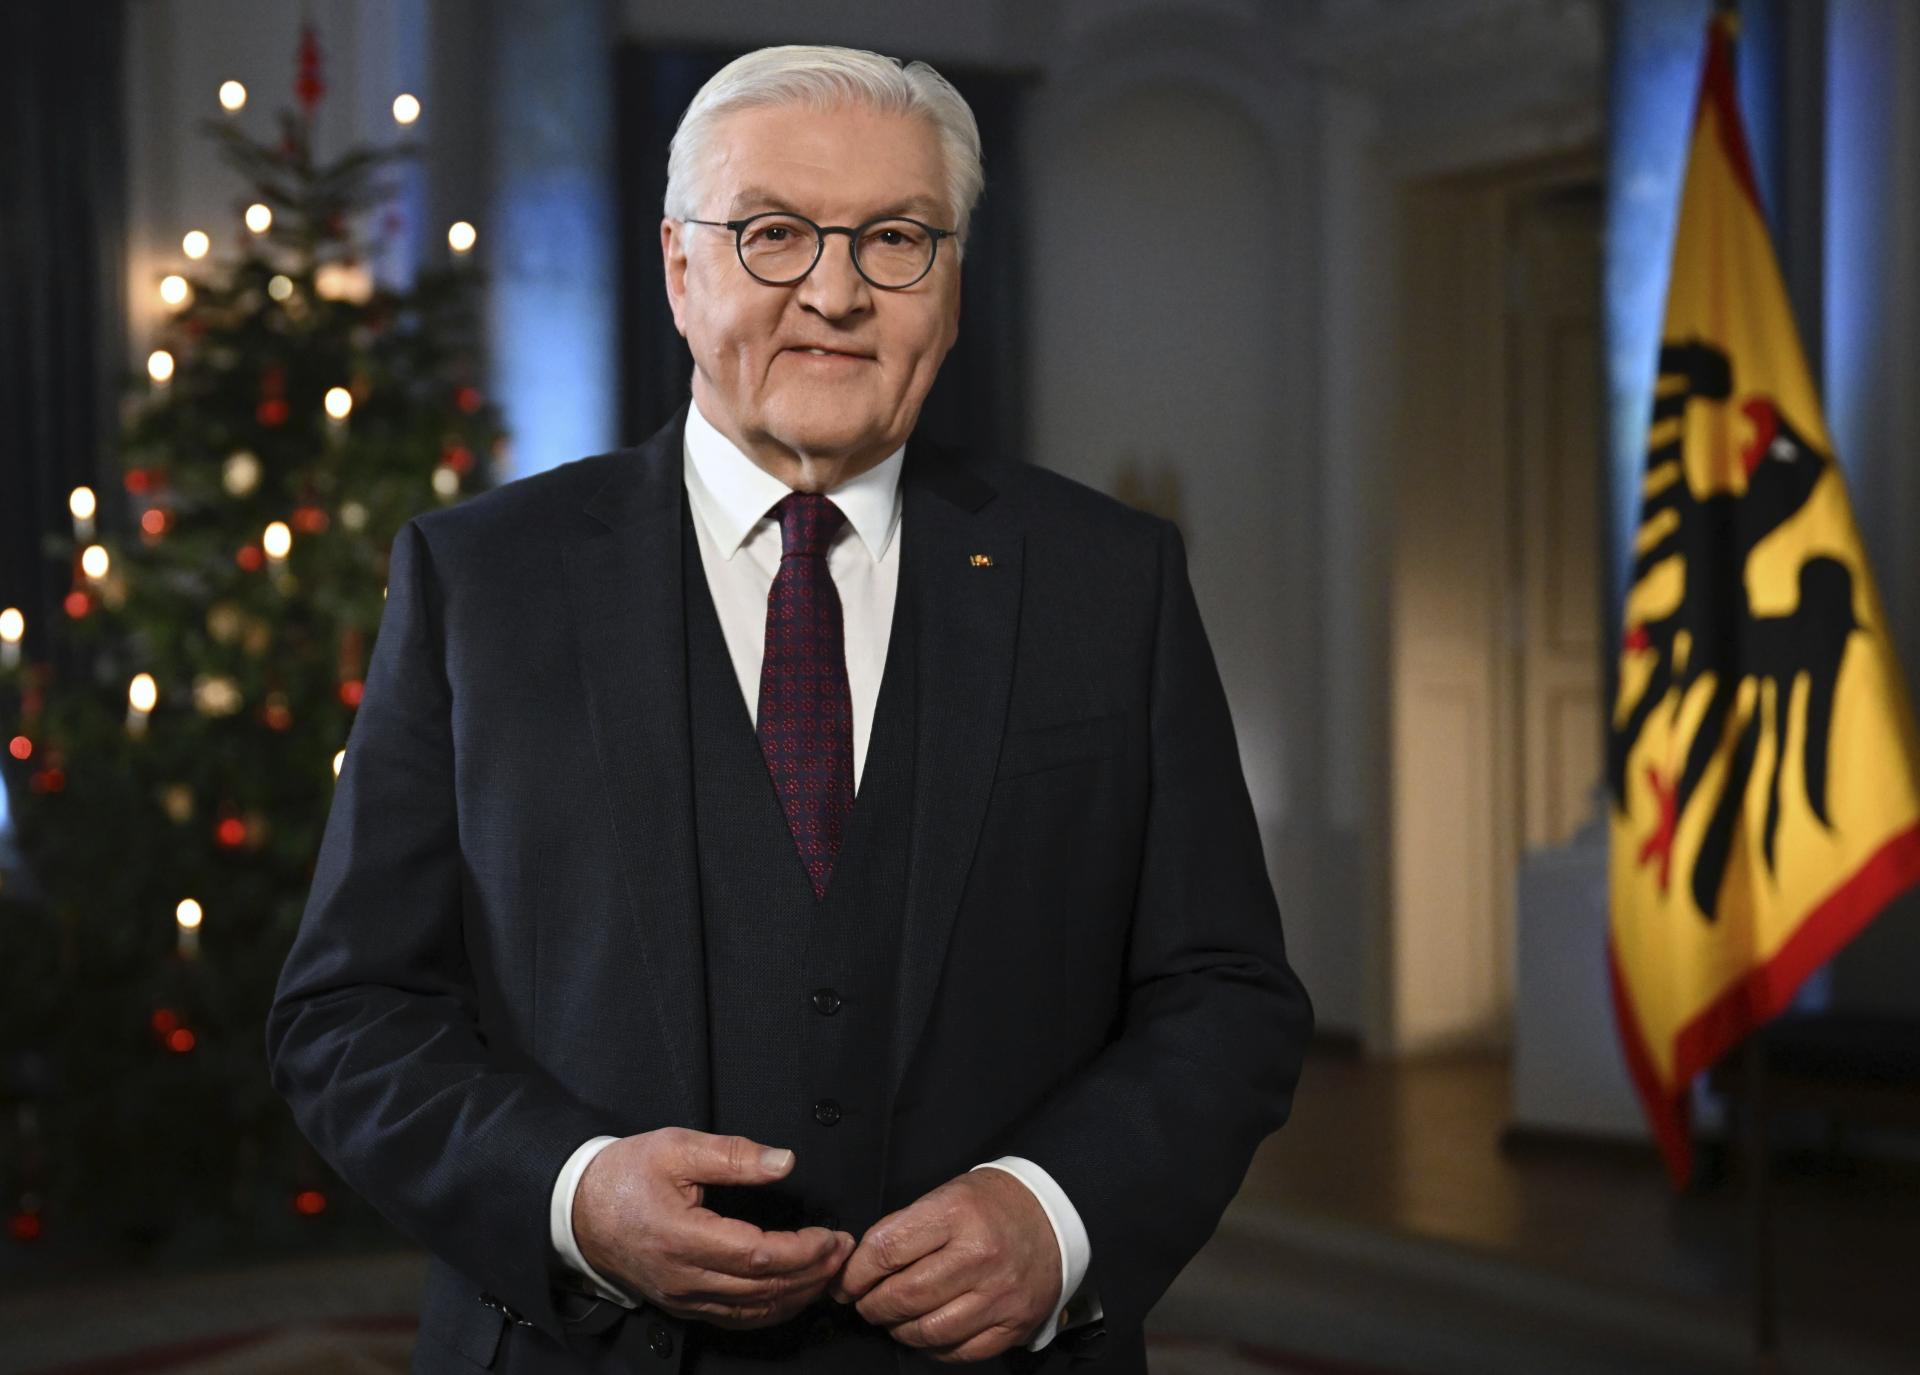 Ťažký rok ukázal podľa prezidenta Steinmeiera súdržnosť Nemecka, želá si ukončenie vojny na Ukrajine